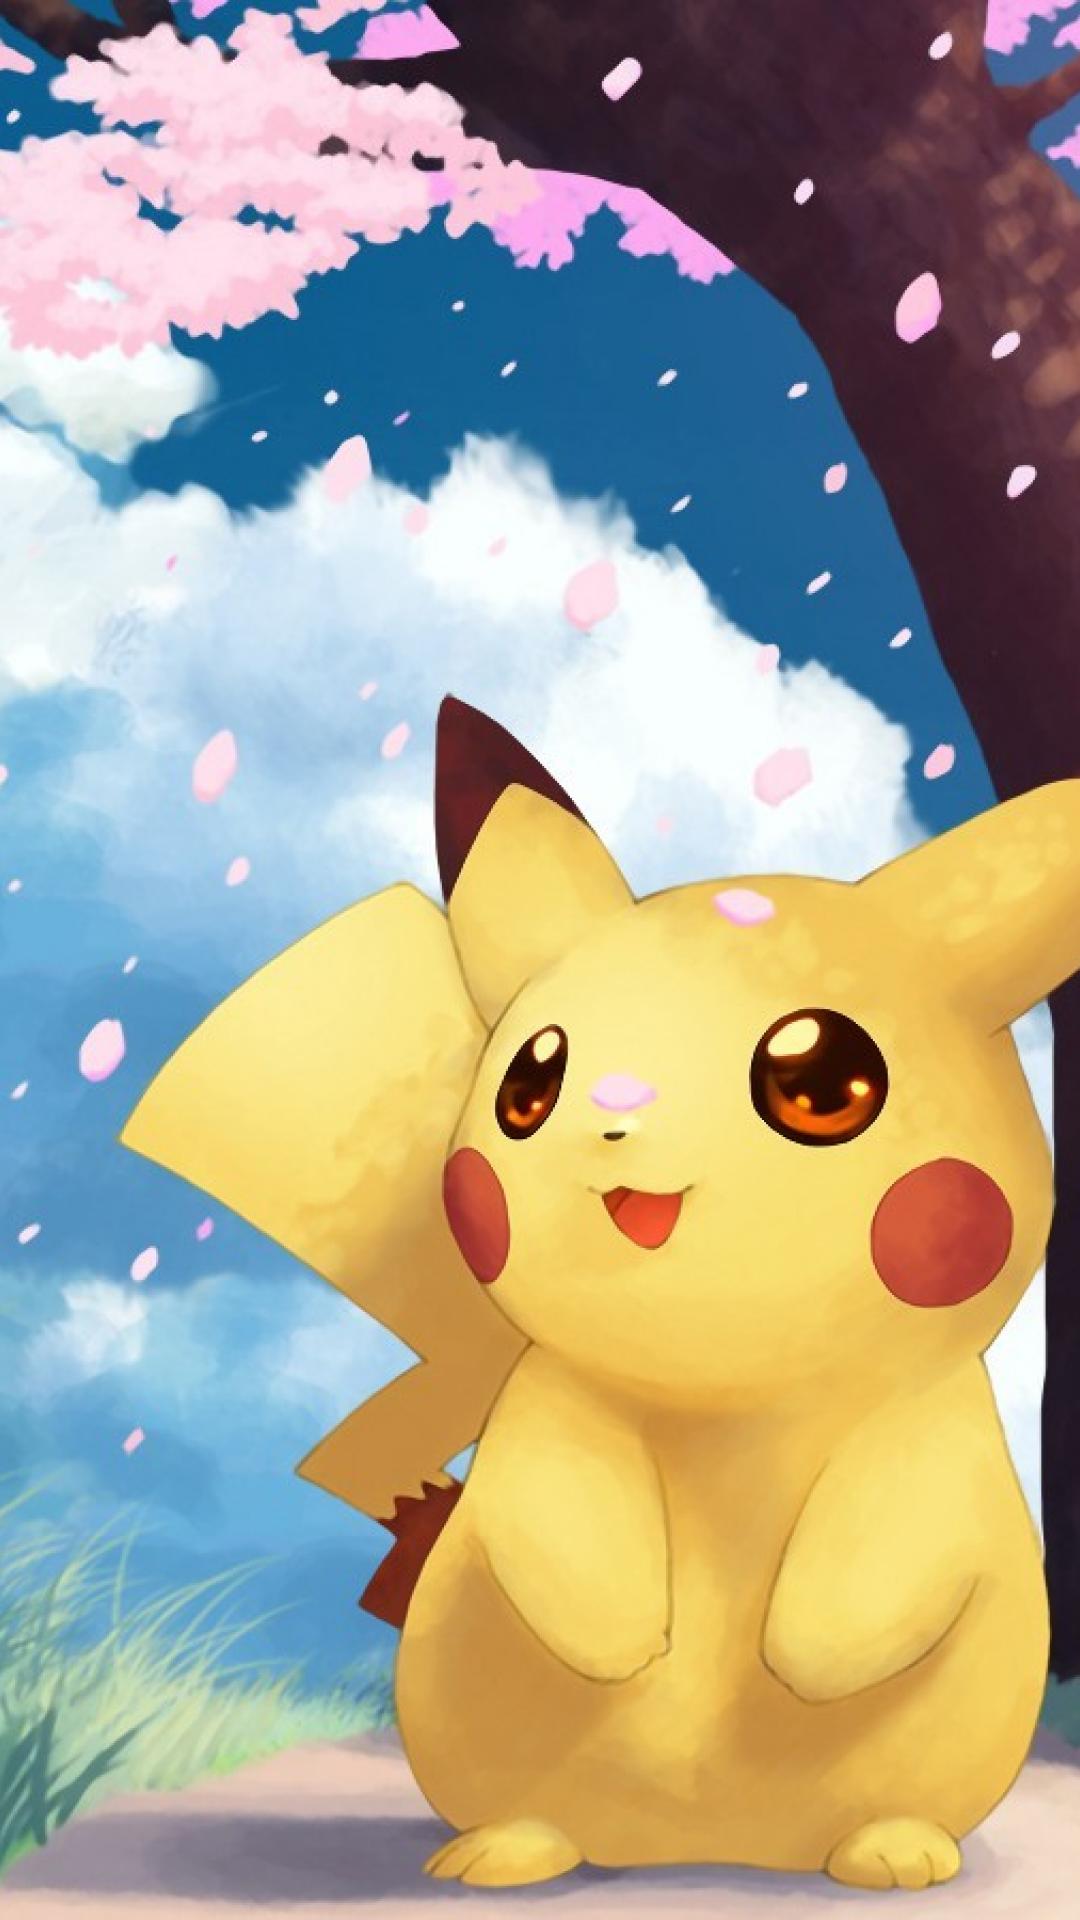 Cute Pikachu Mobile Wallpapers  HD Girl Phone Wallpaper  Facebook